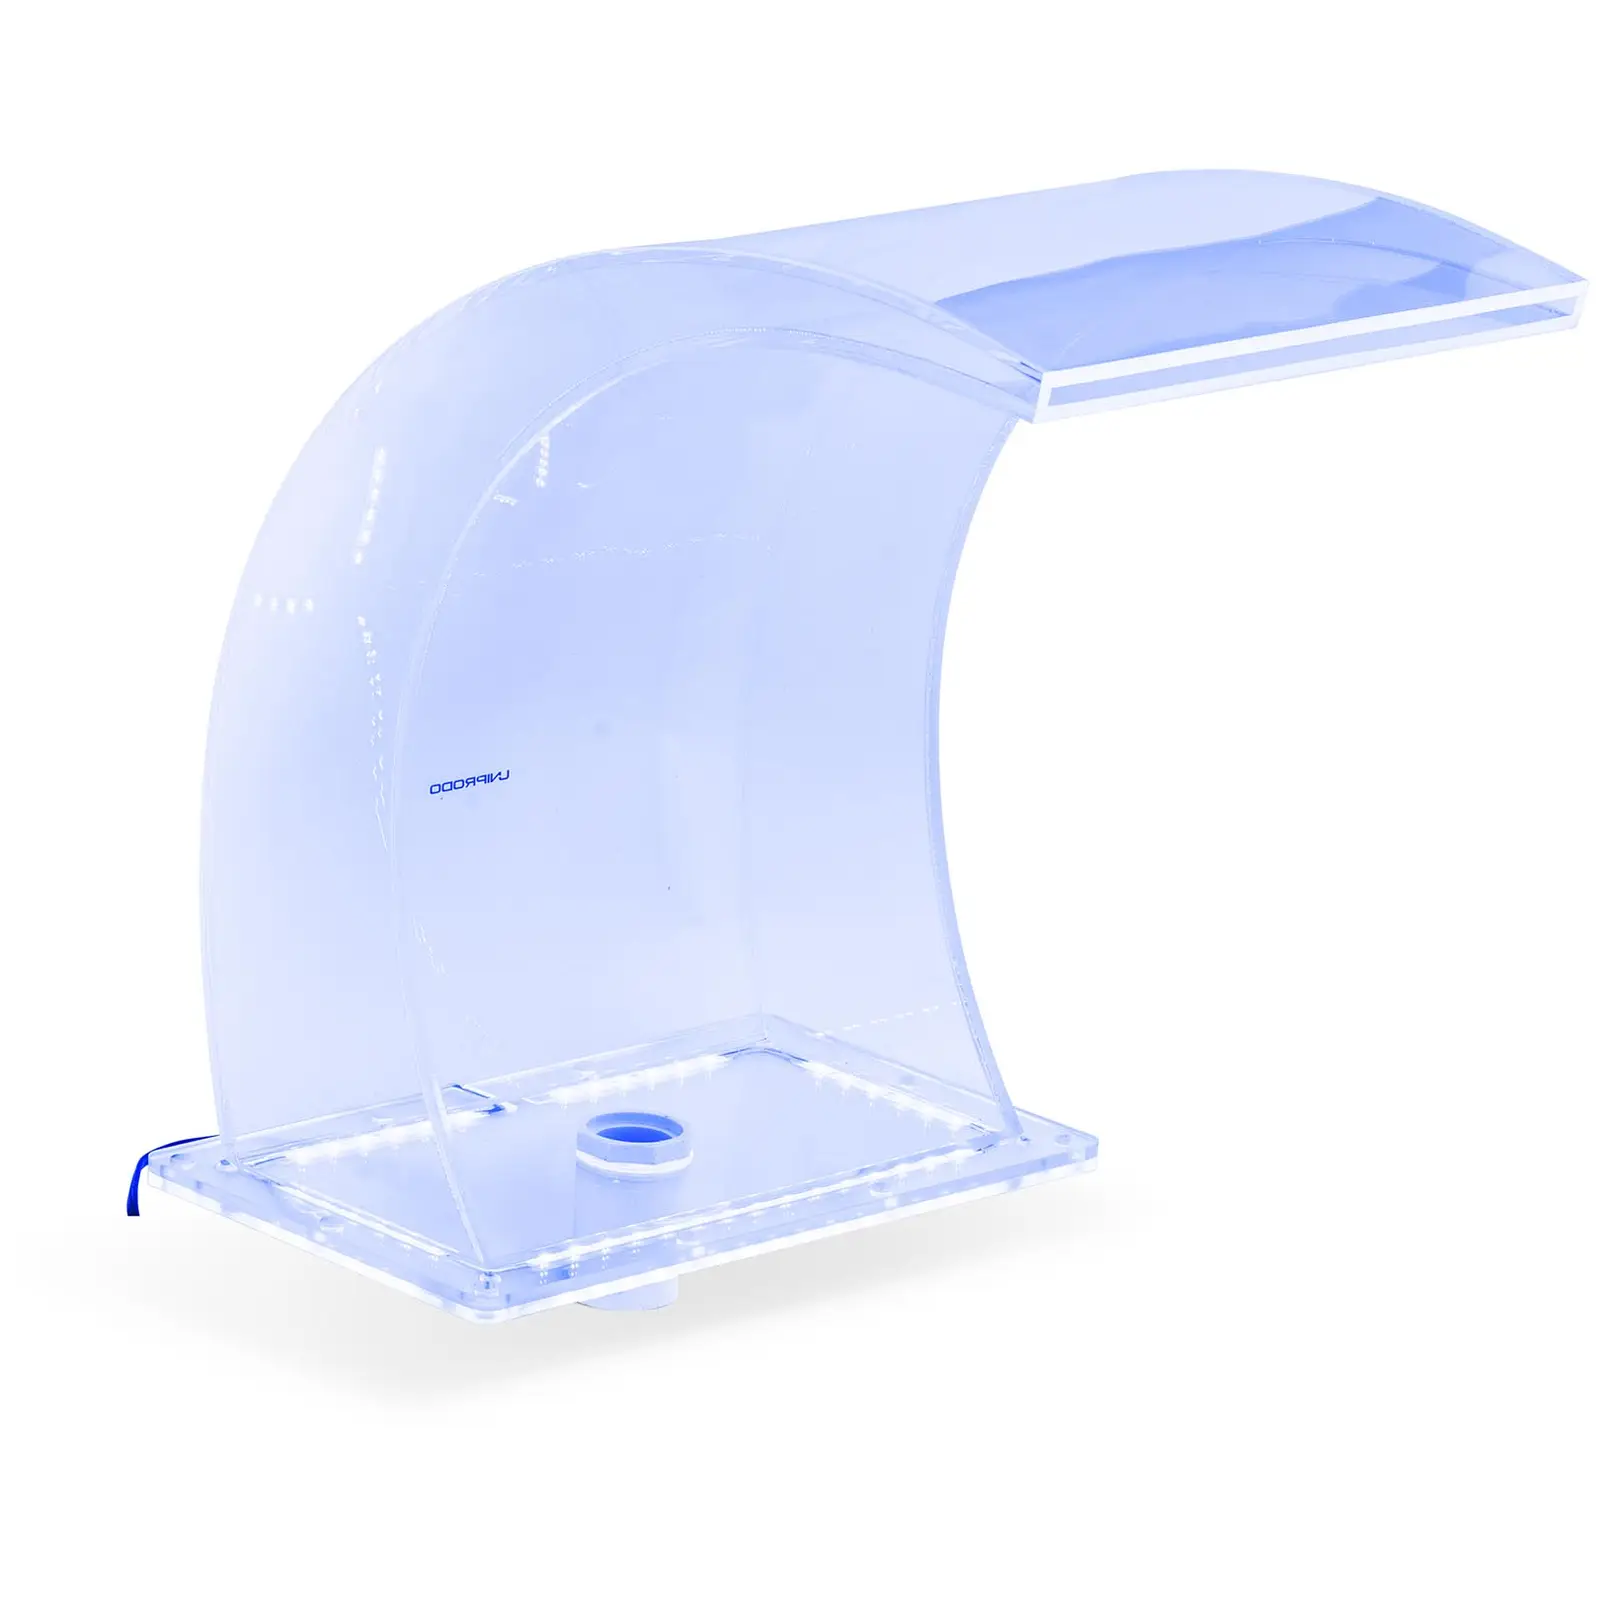 Surge shower - 33 cm - LED lighting - Blue / White